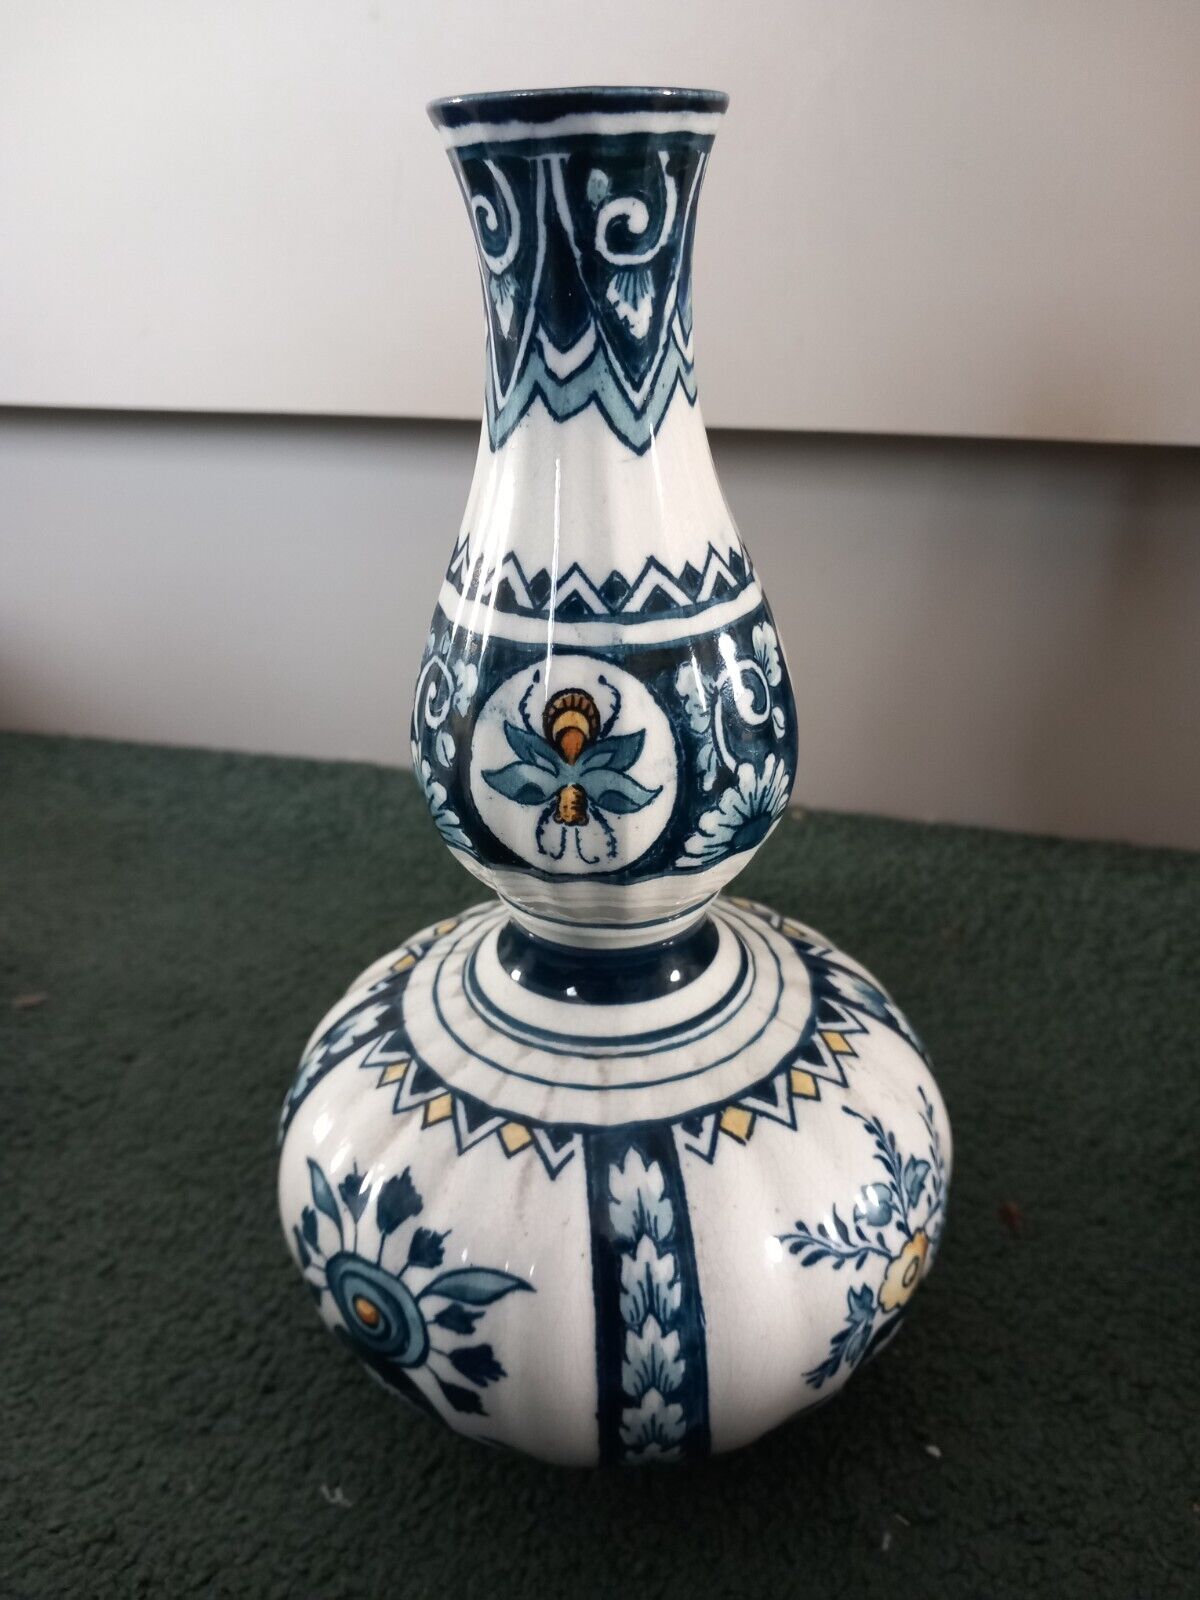 Antique delft style gourd shape vase